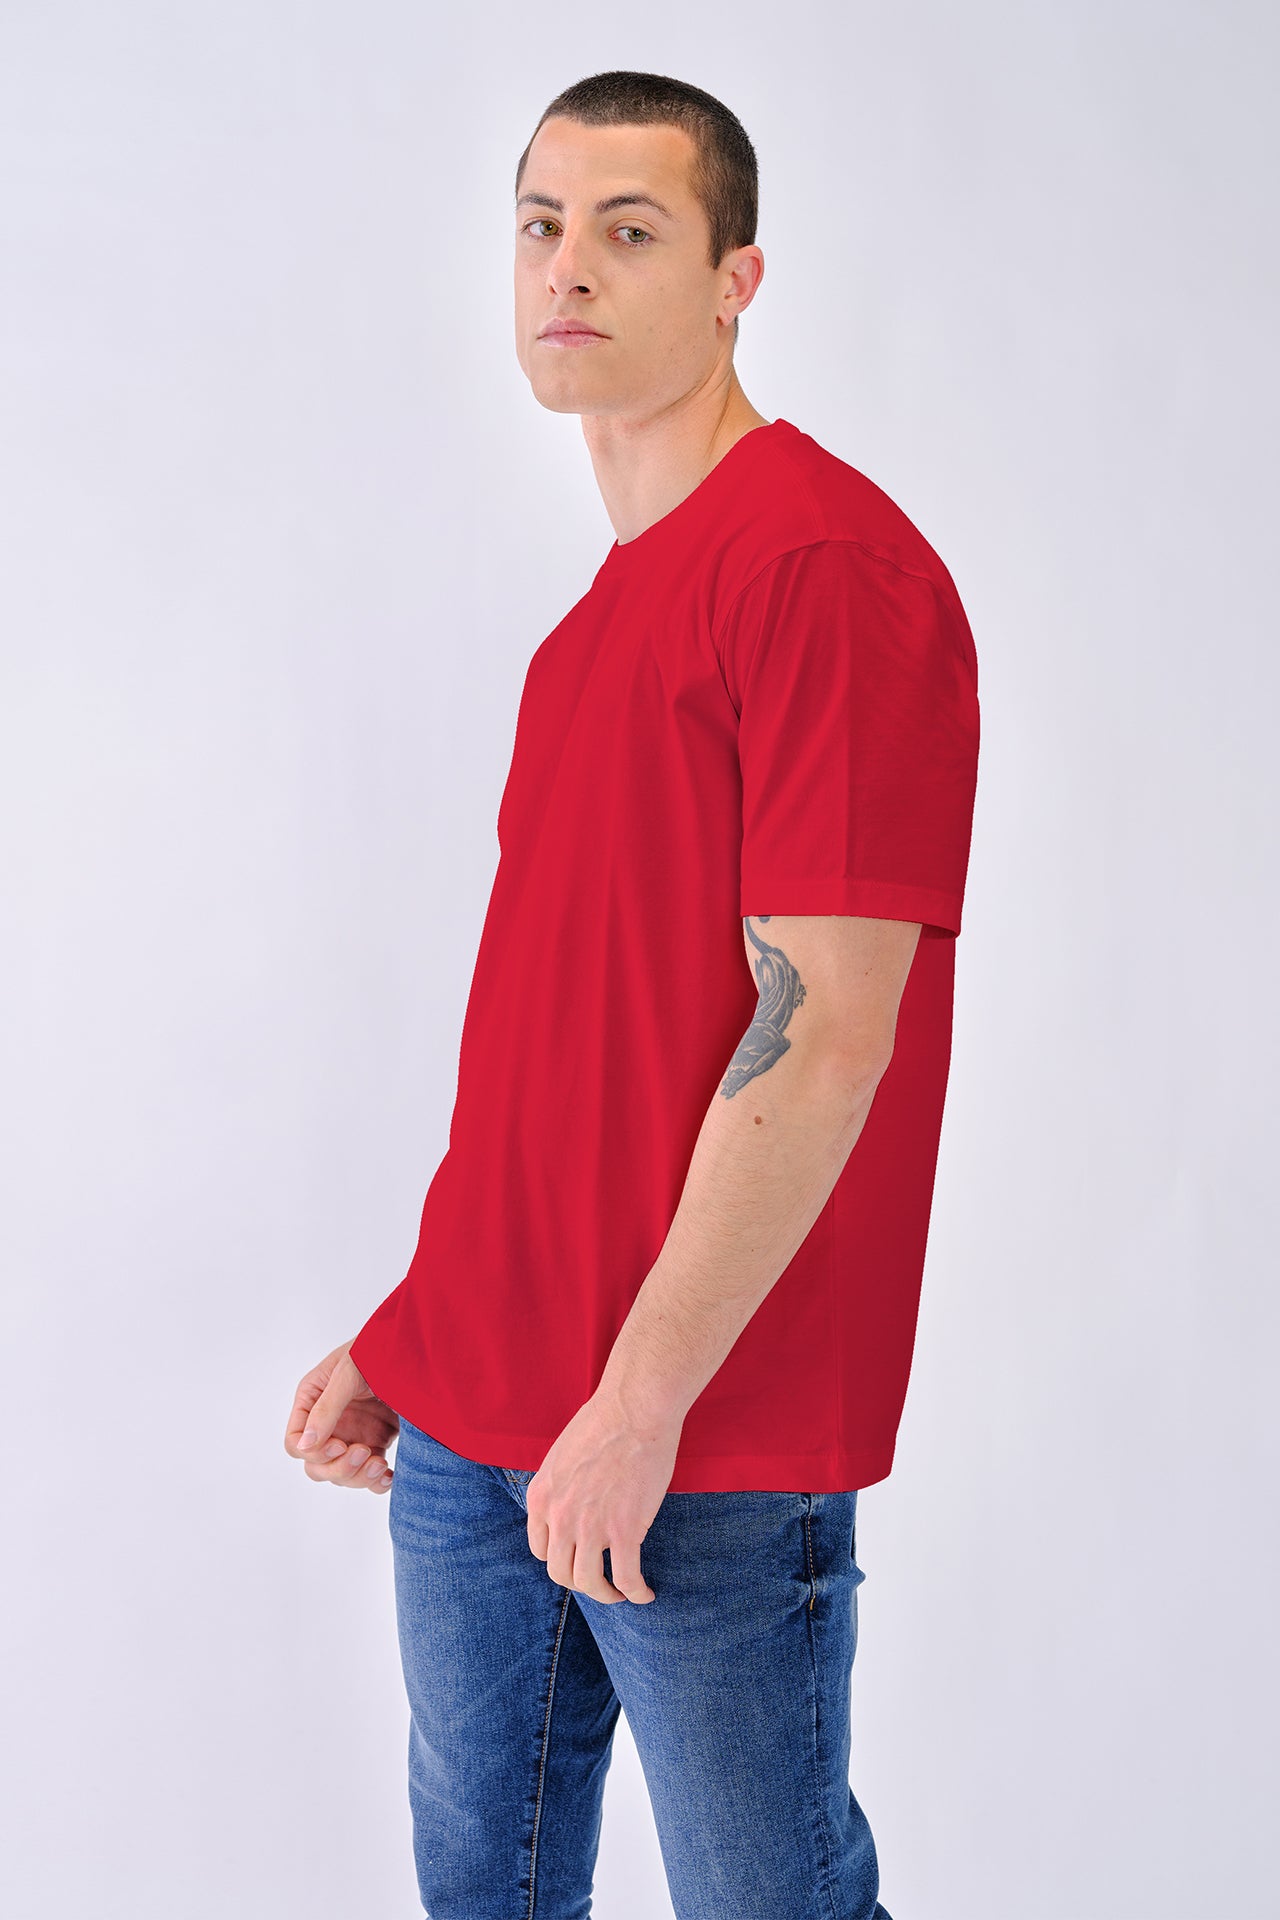 190/300 - T-shirt Homem